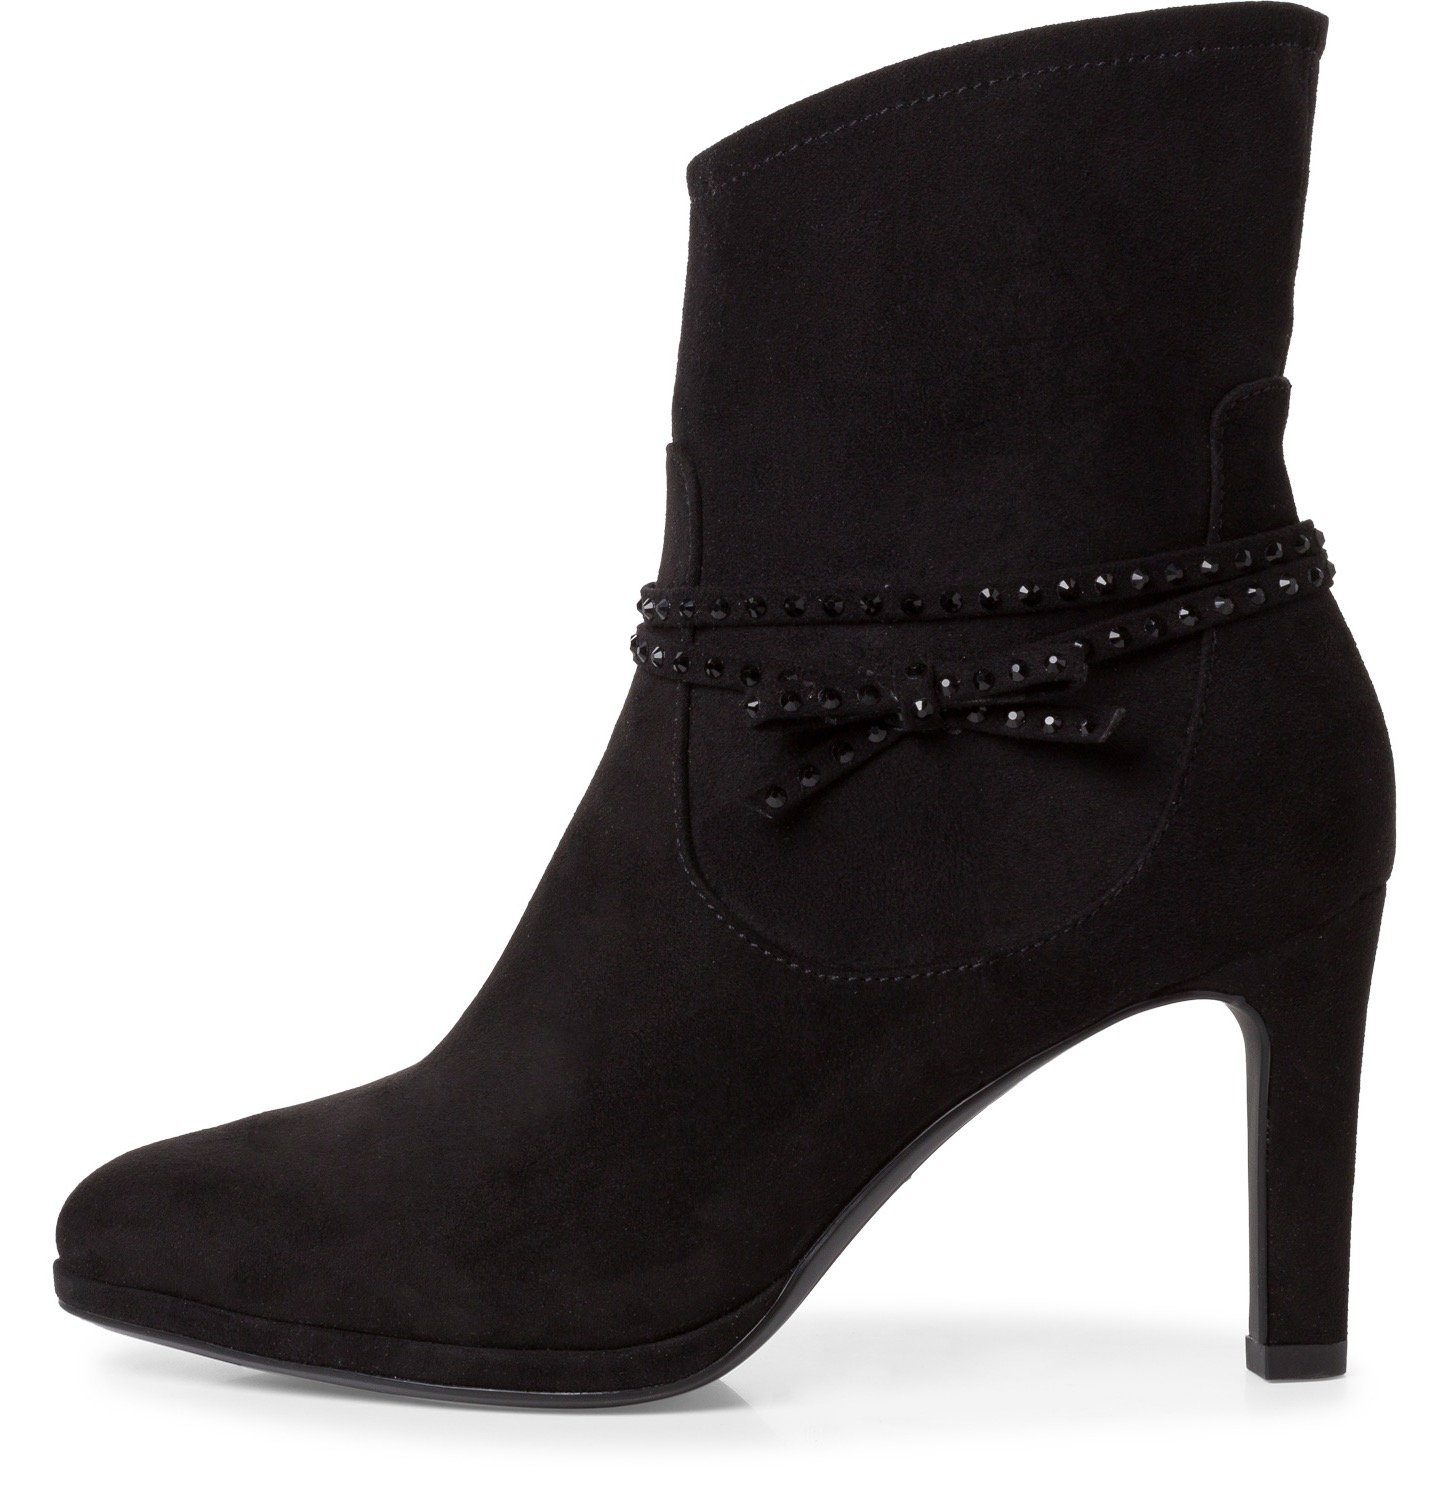 Schwarze hohe Tamaris Schuhe online kaufen | OTTO